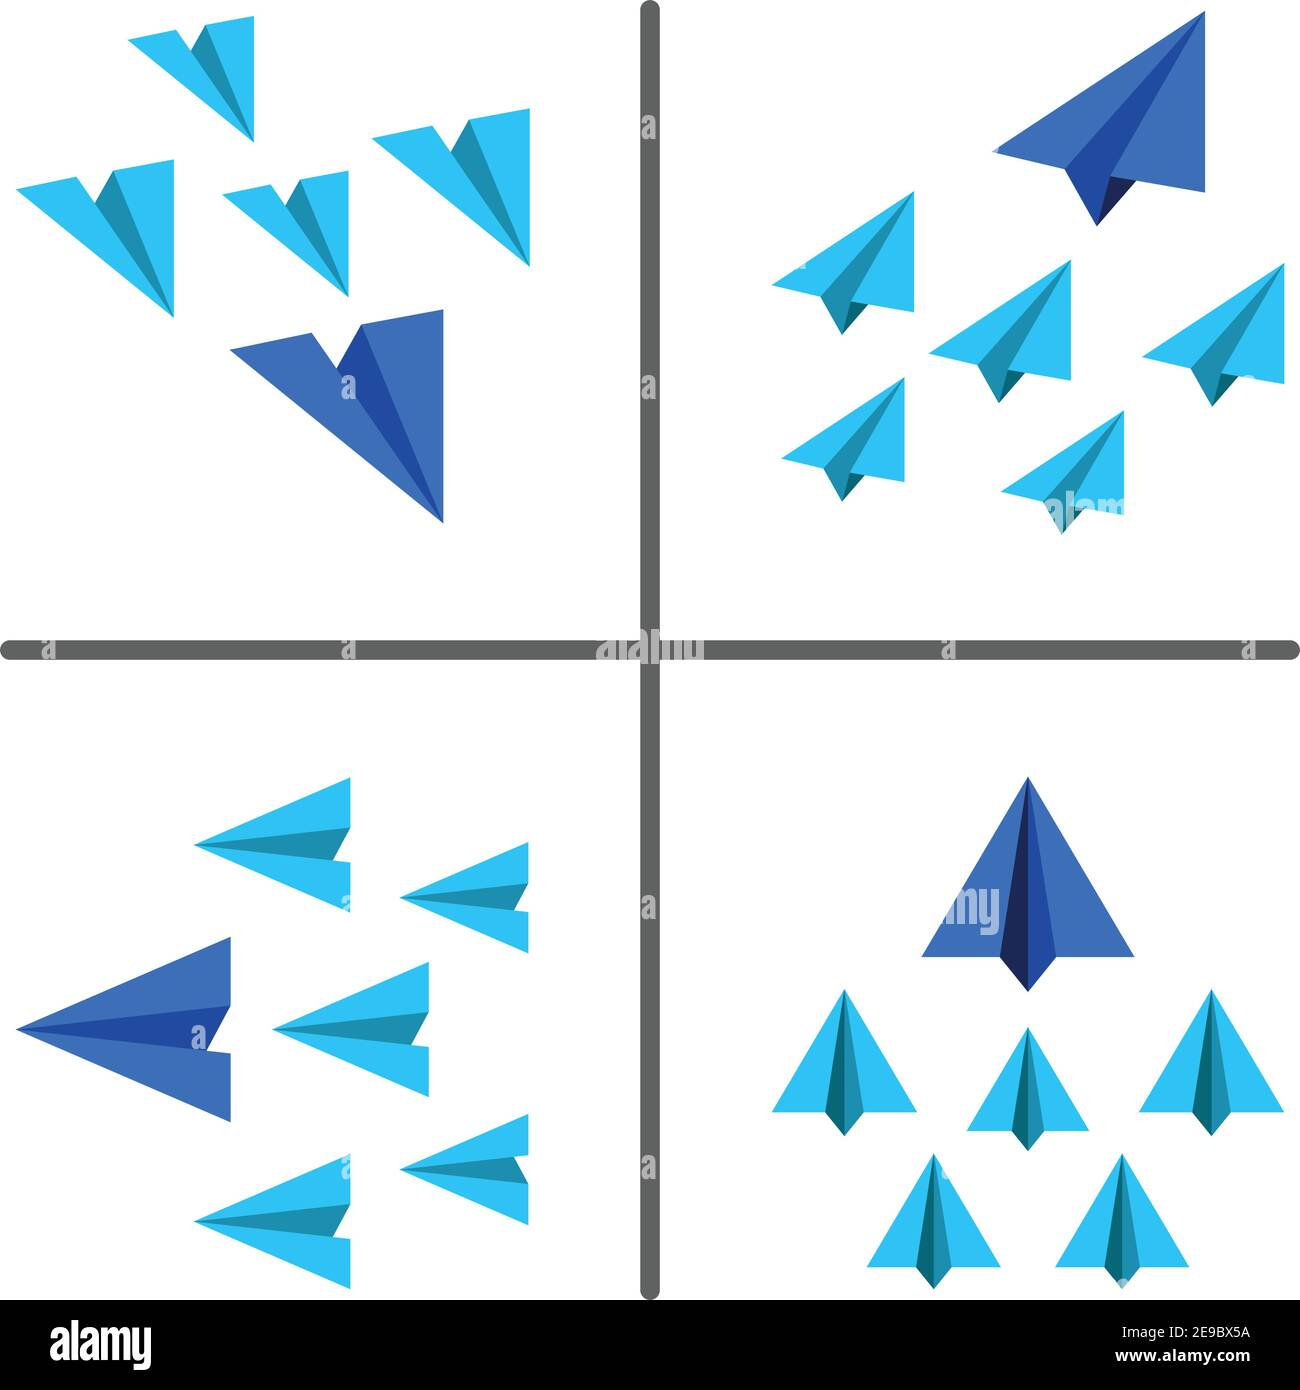 Blaues und hellblaues Papierflugzeug, das auf die gleiche Weise fliegt, geschäftlich Und Führungskonzept, Papierebene konzeptionelle Illustration und Vektor-Set Stock Vektor